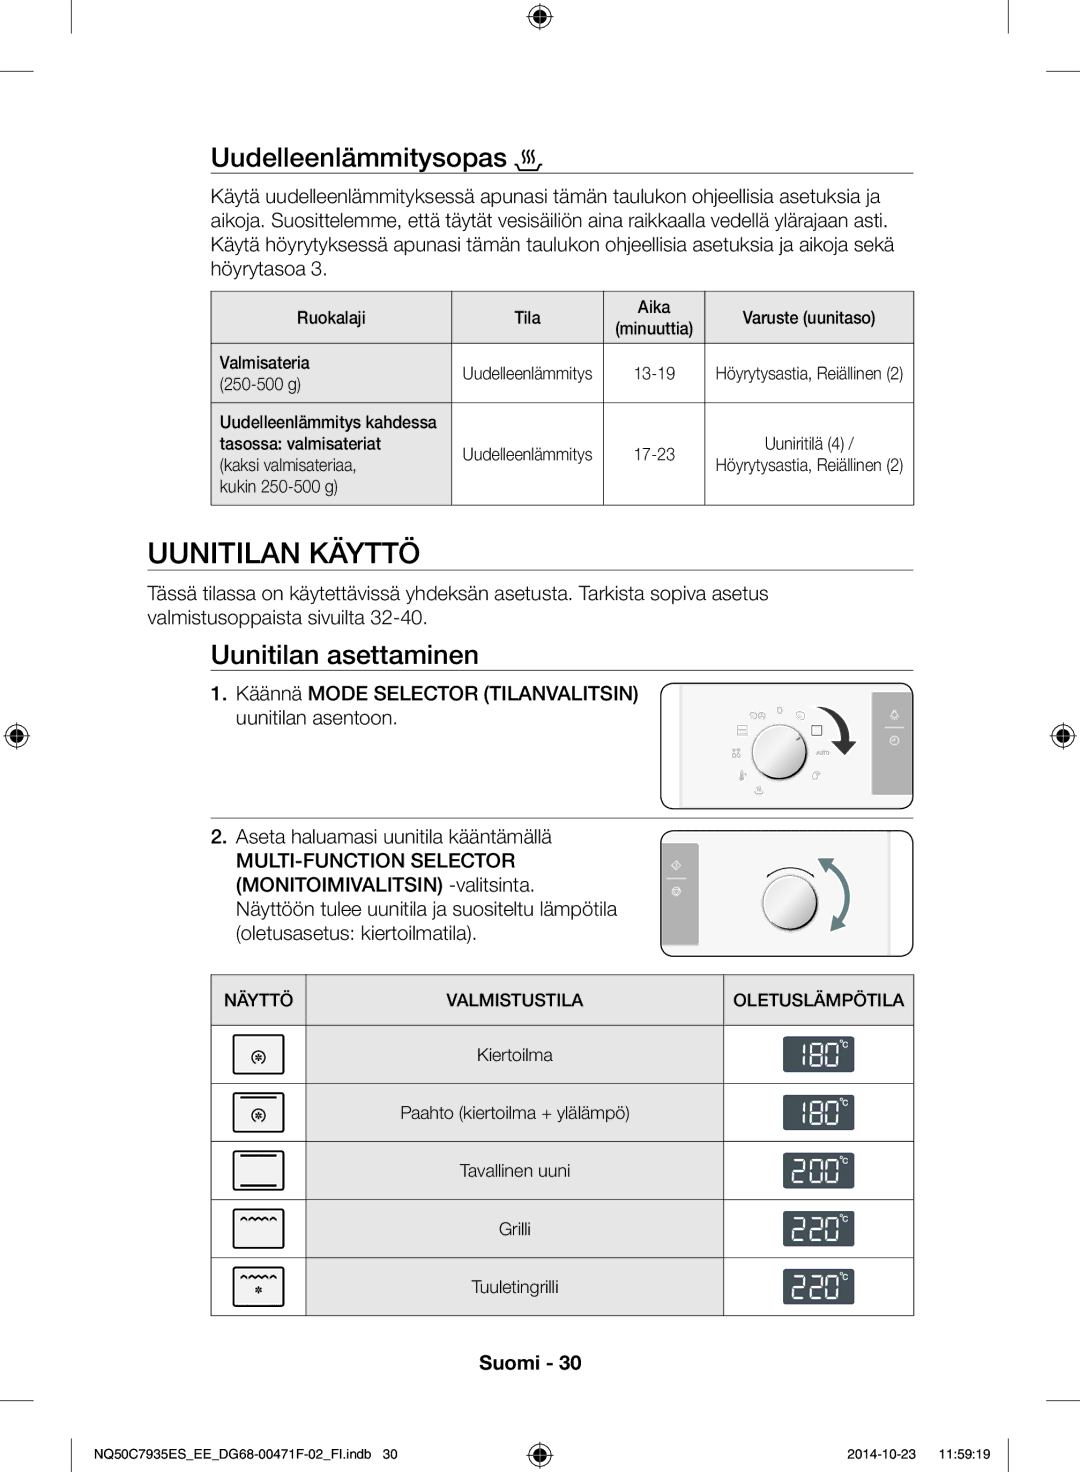 Samsung NQ50C7935ES/EE manual Uunitilan käyttö, Uudelleenlämmitysopas, Uunitilan asettaminen 